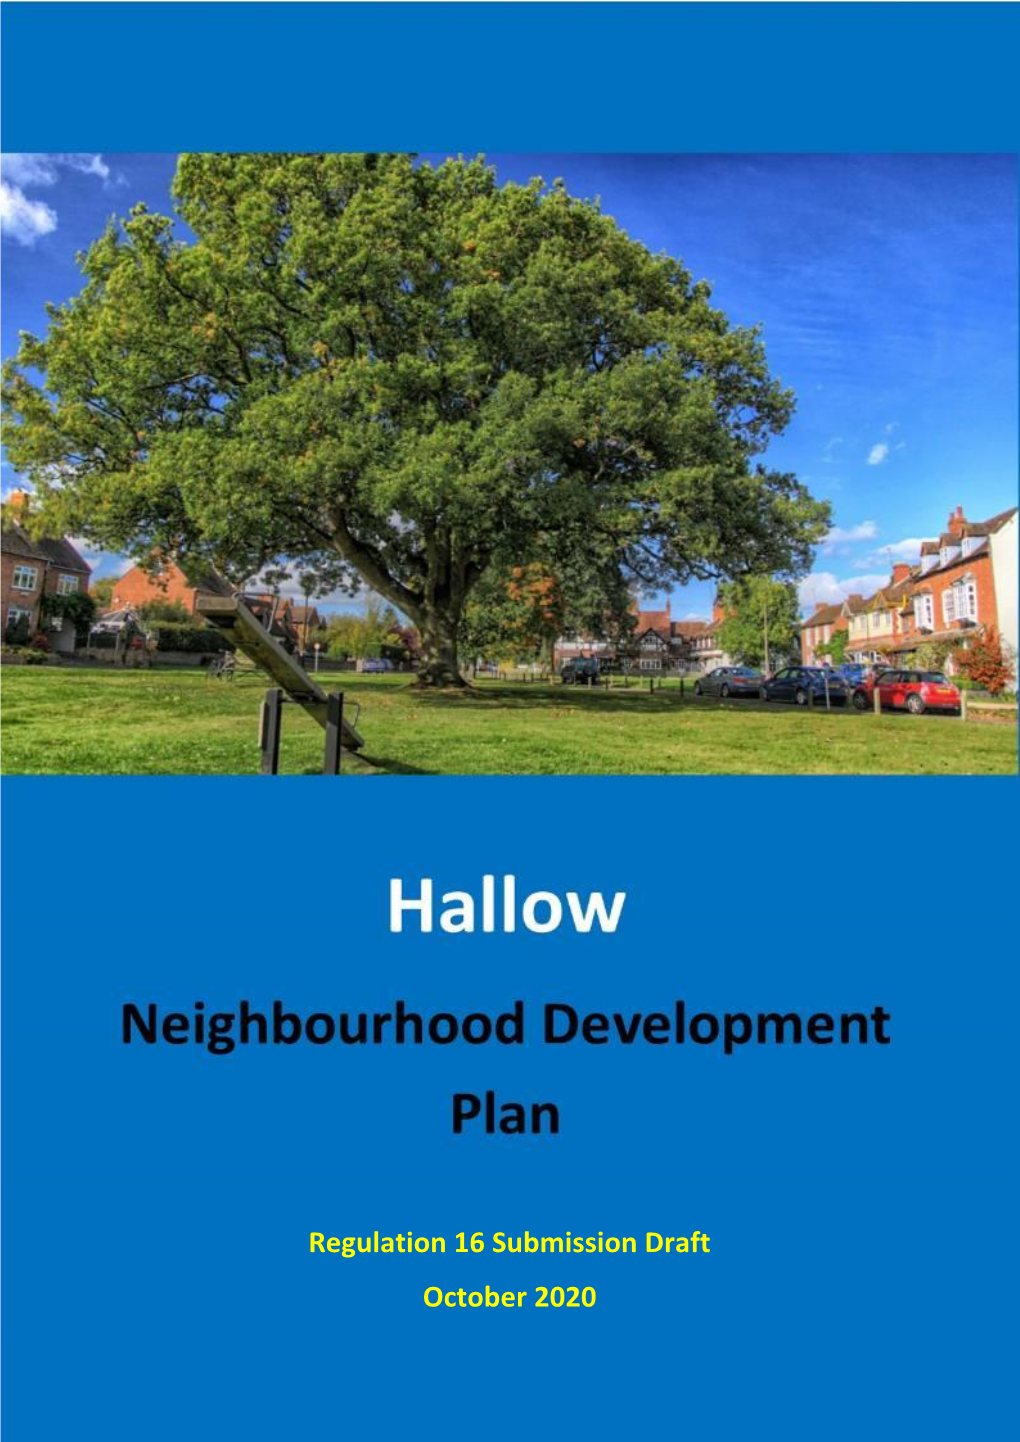 Hallow Neighbourhood Development Plan, Regulation 16 Draft, October 2020